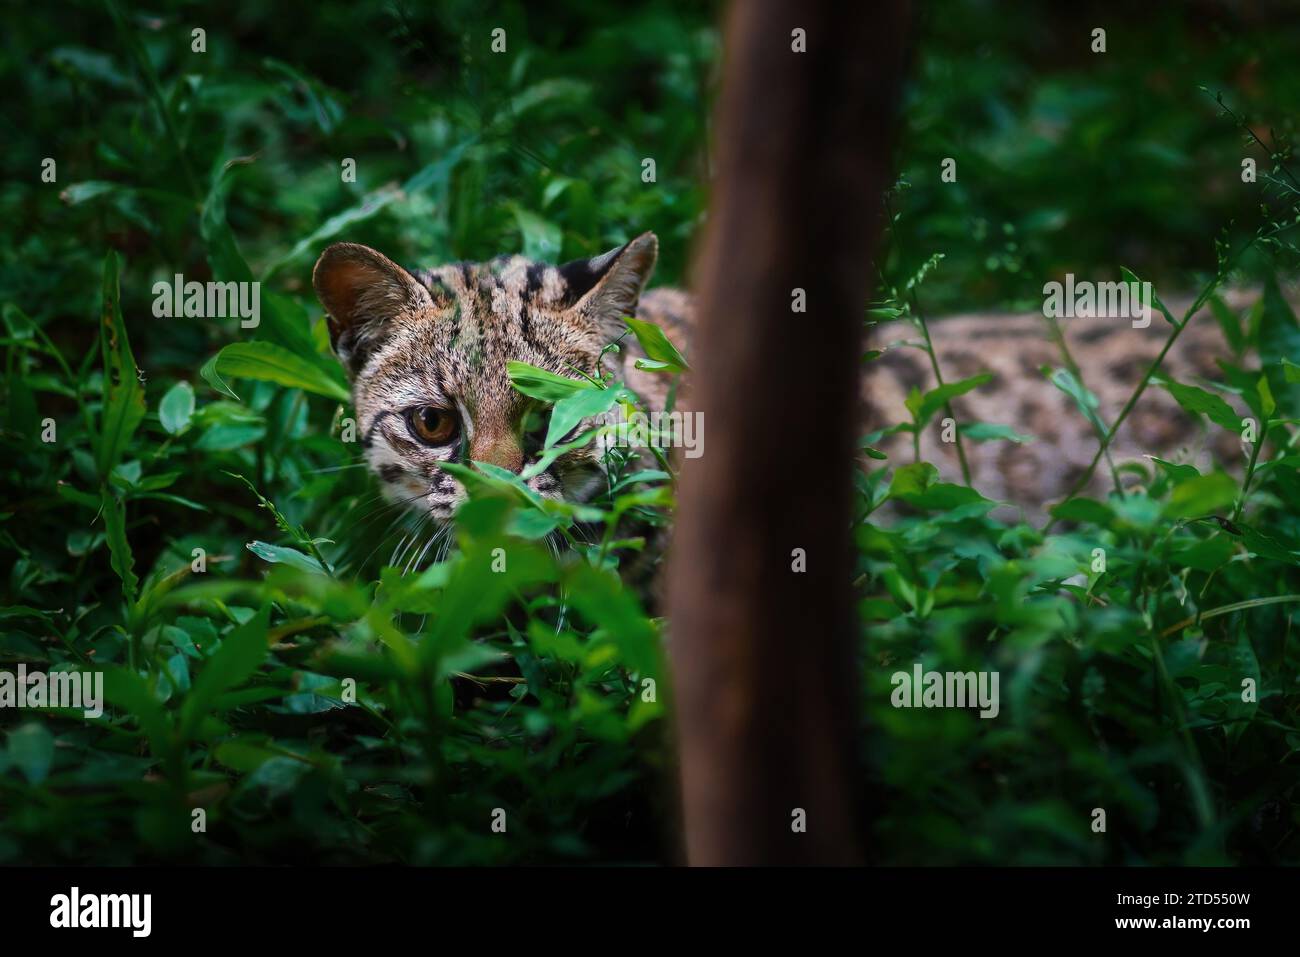 Cache d'Oncilla (Leopardus tigrinus) - chat sauvage tacheté d'Amérique centrale et du Sud Banque D'Images